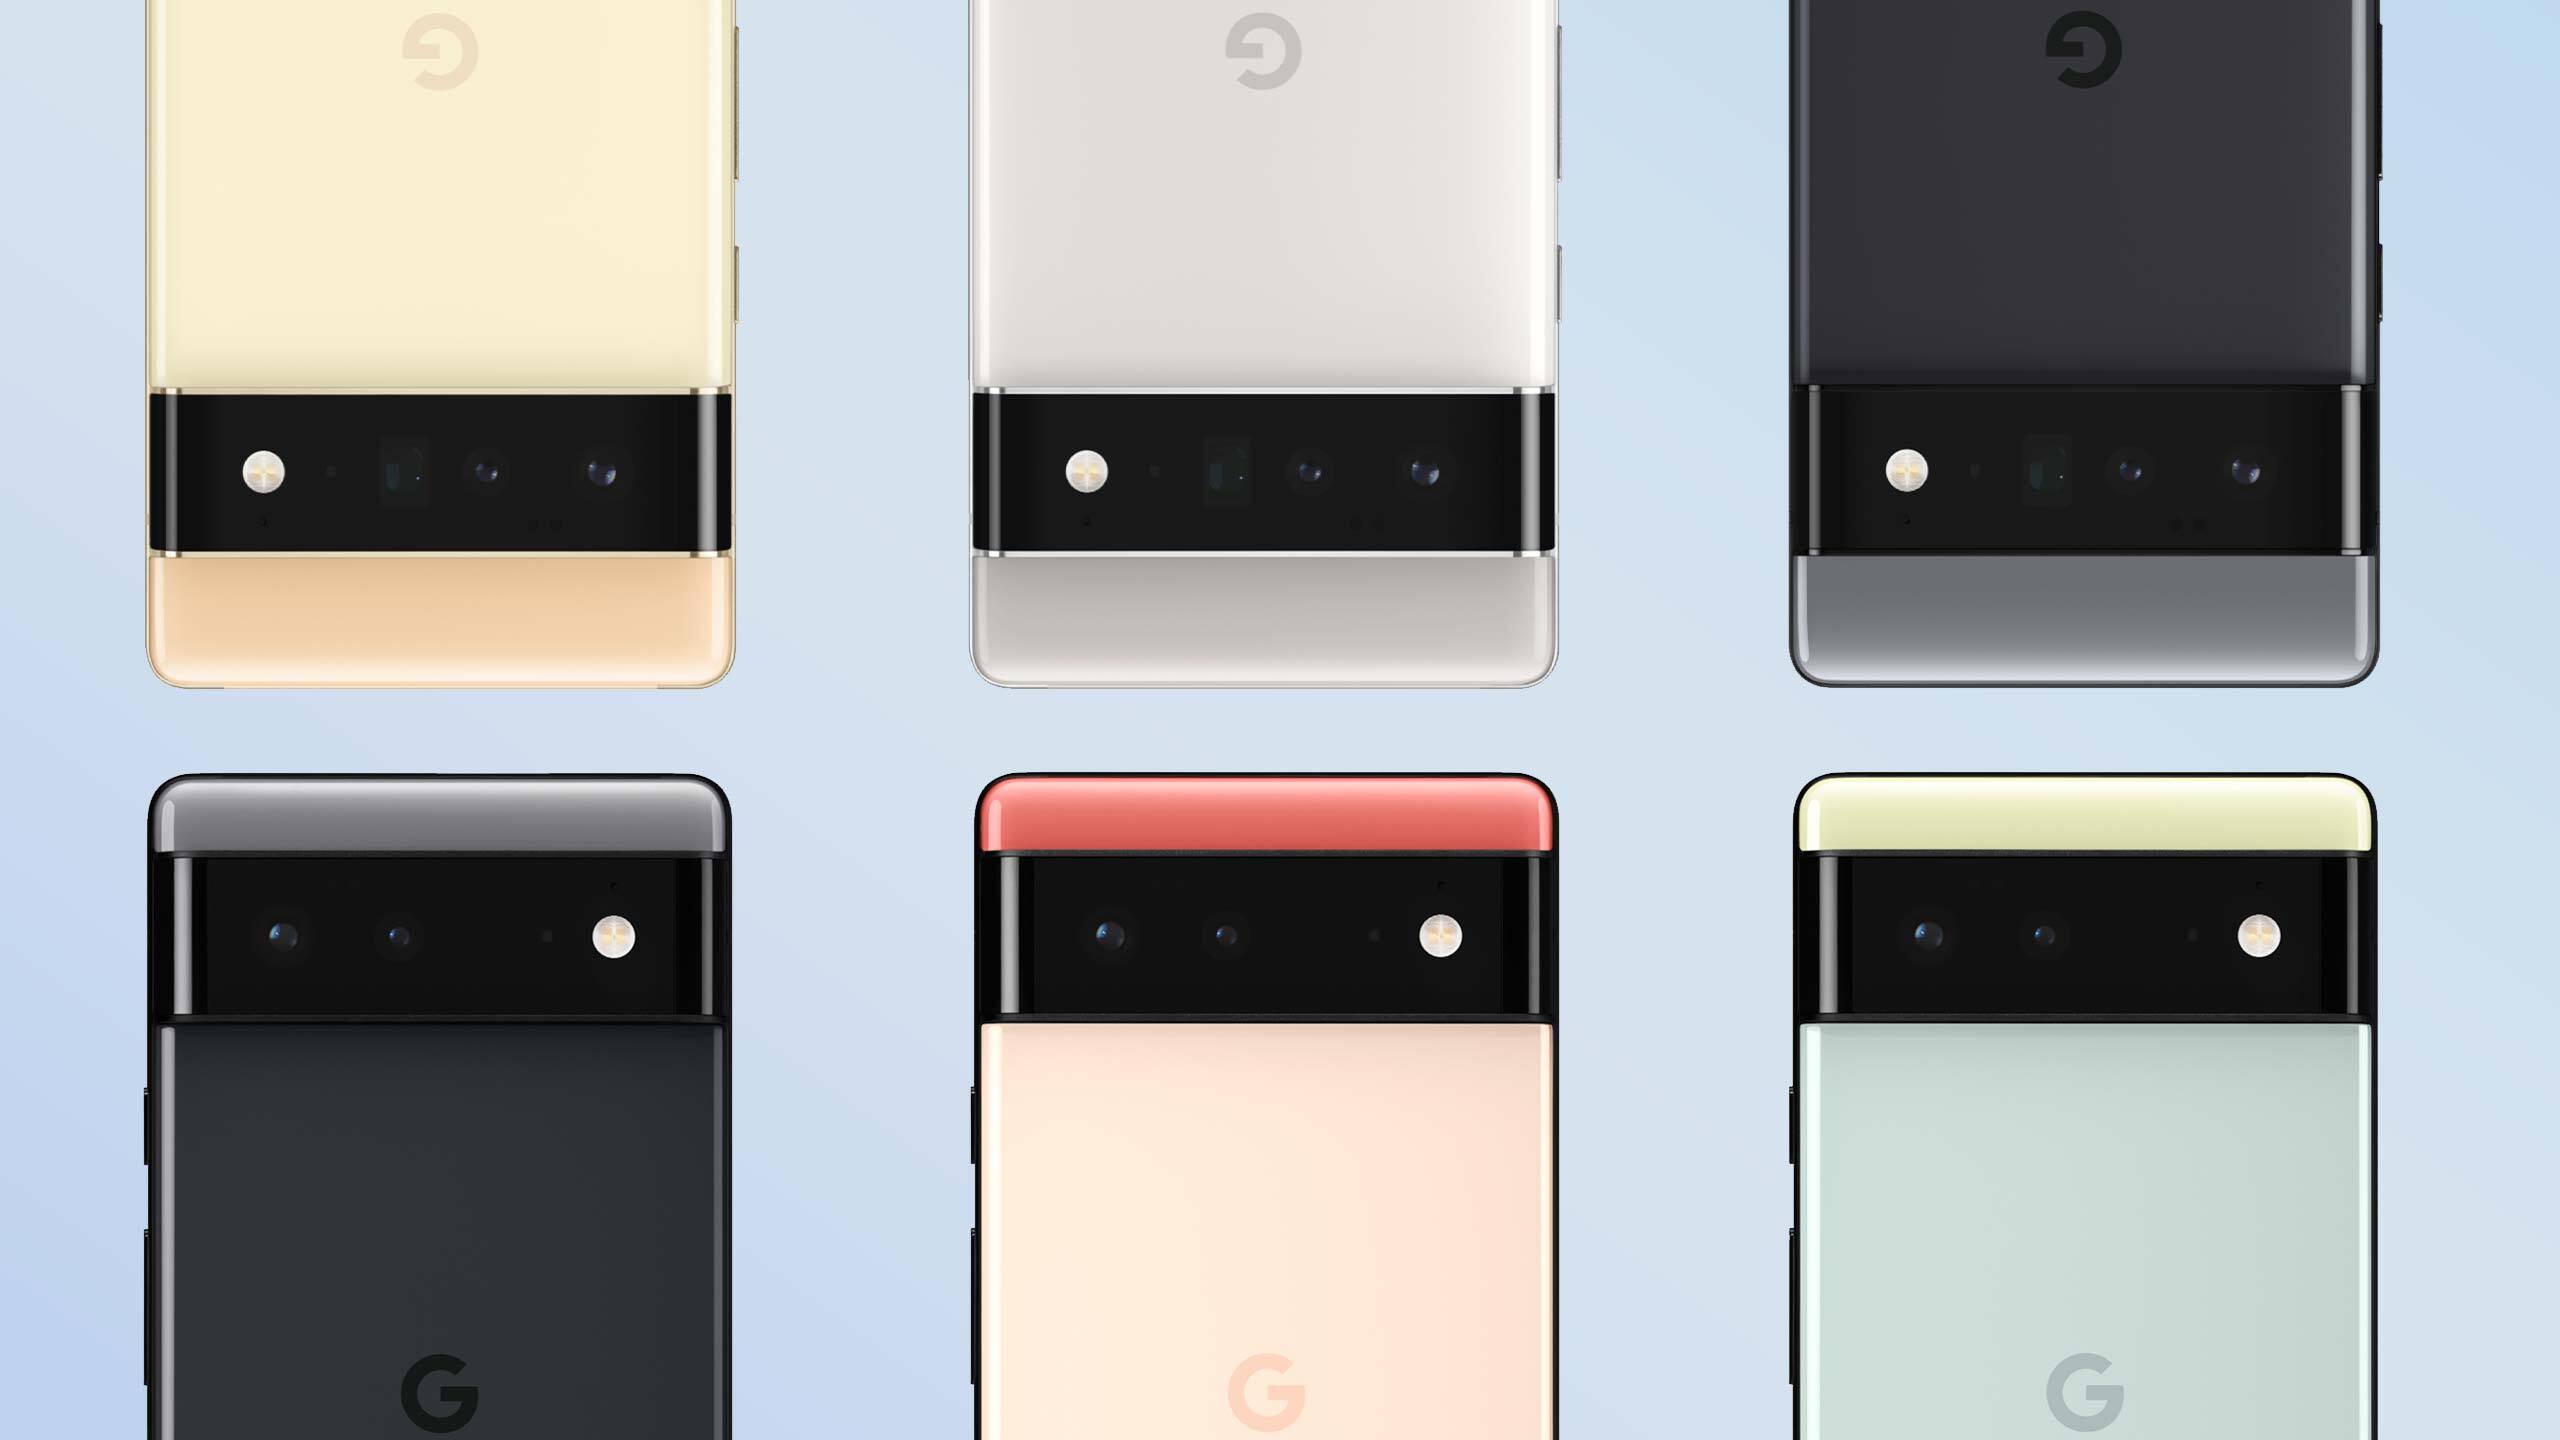 Google's Pixel 6 and Pixel 6 Pro smartphones don't actually support 30-watt fast charging